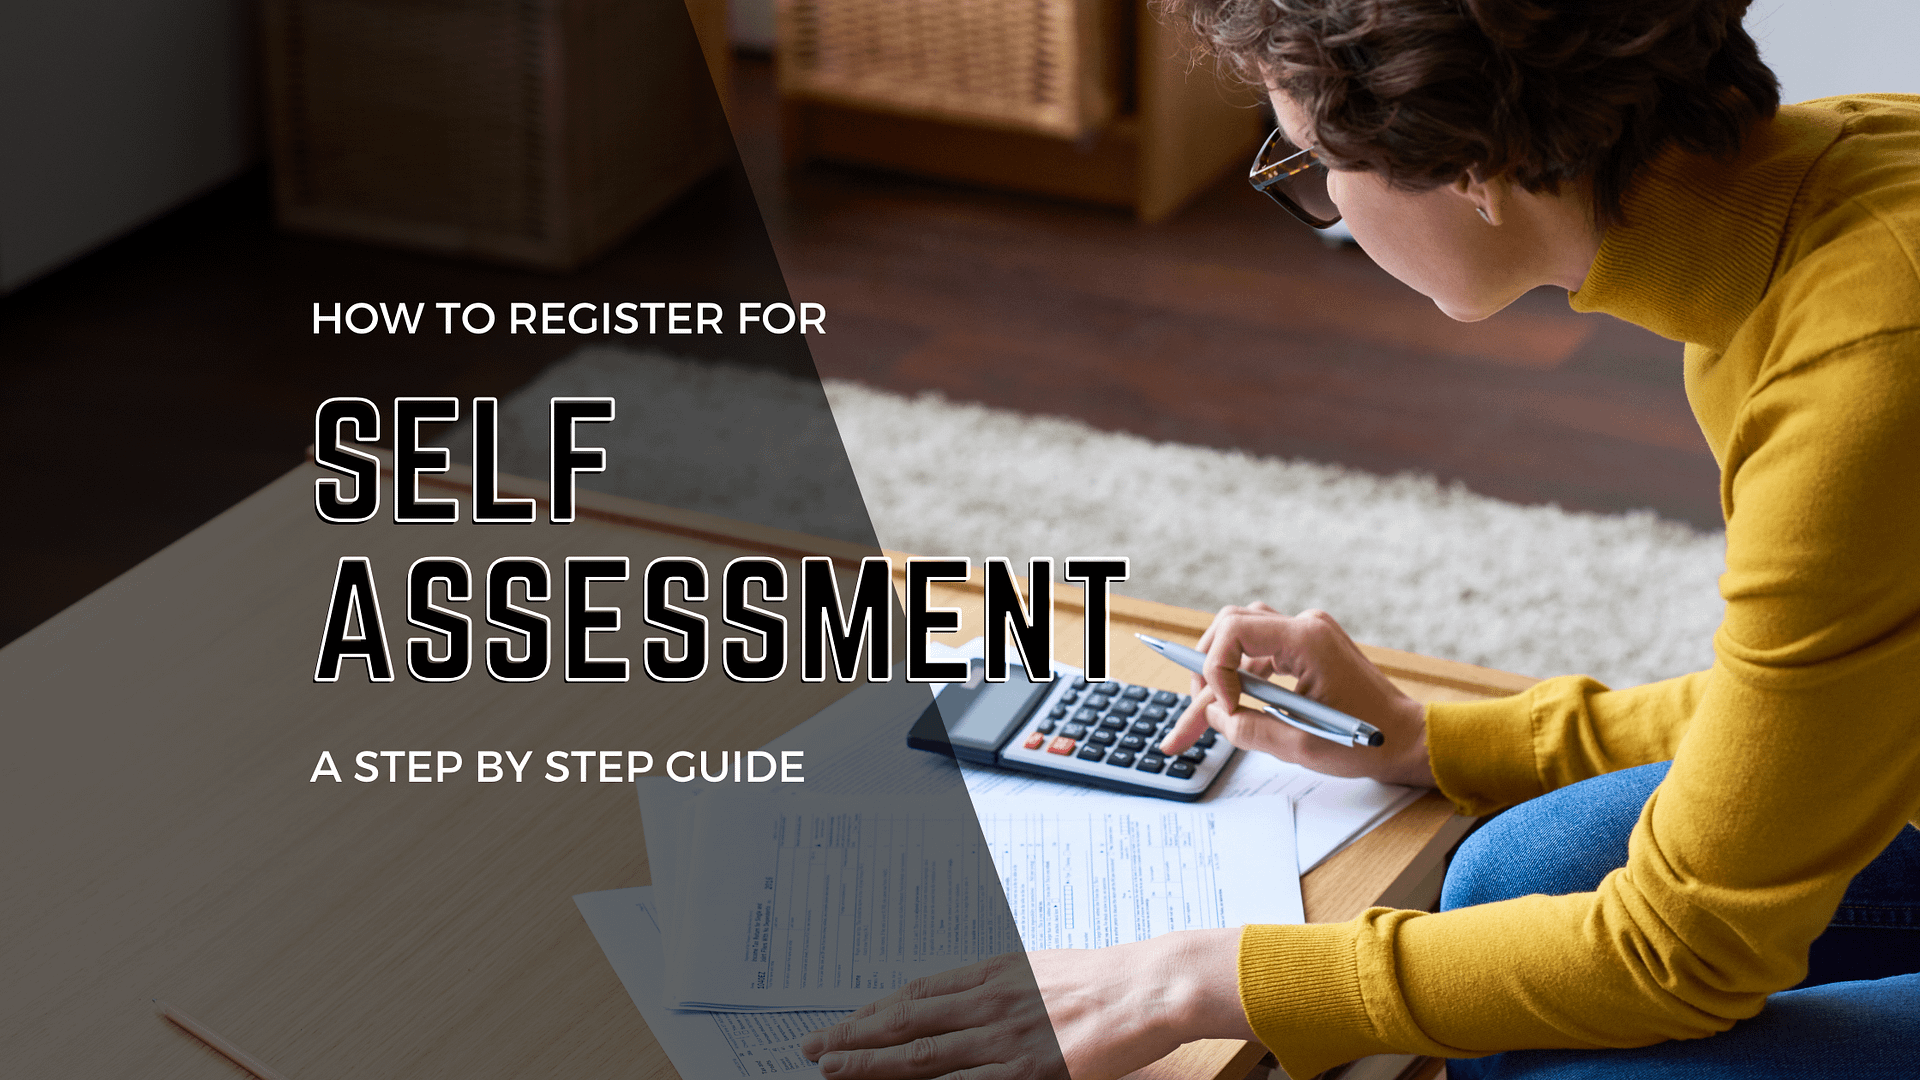 Register for Self-Assessment